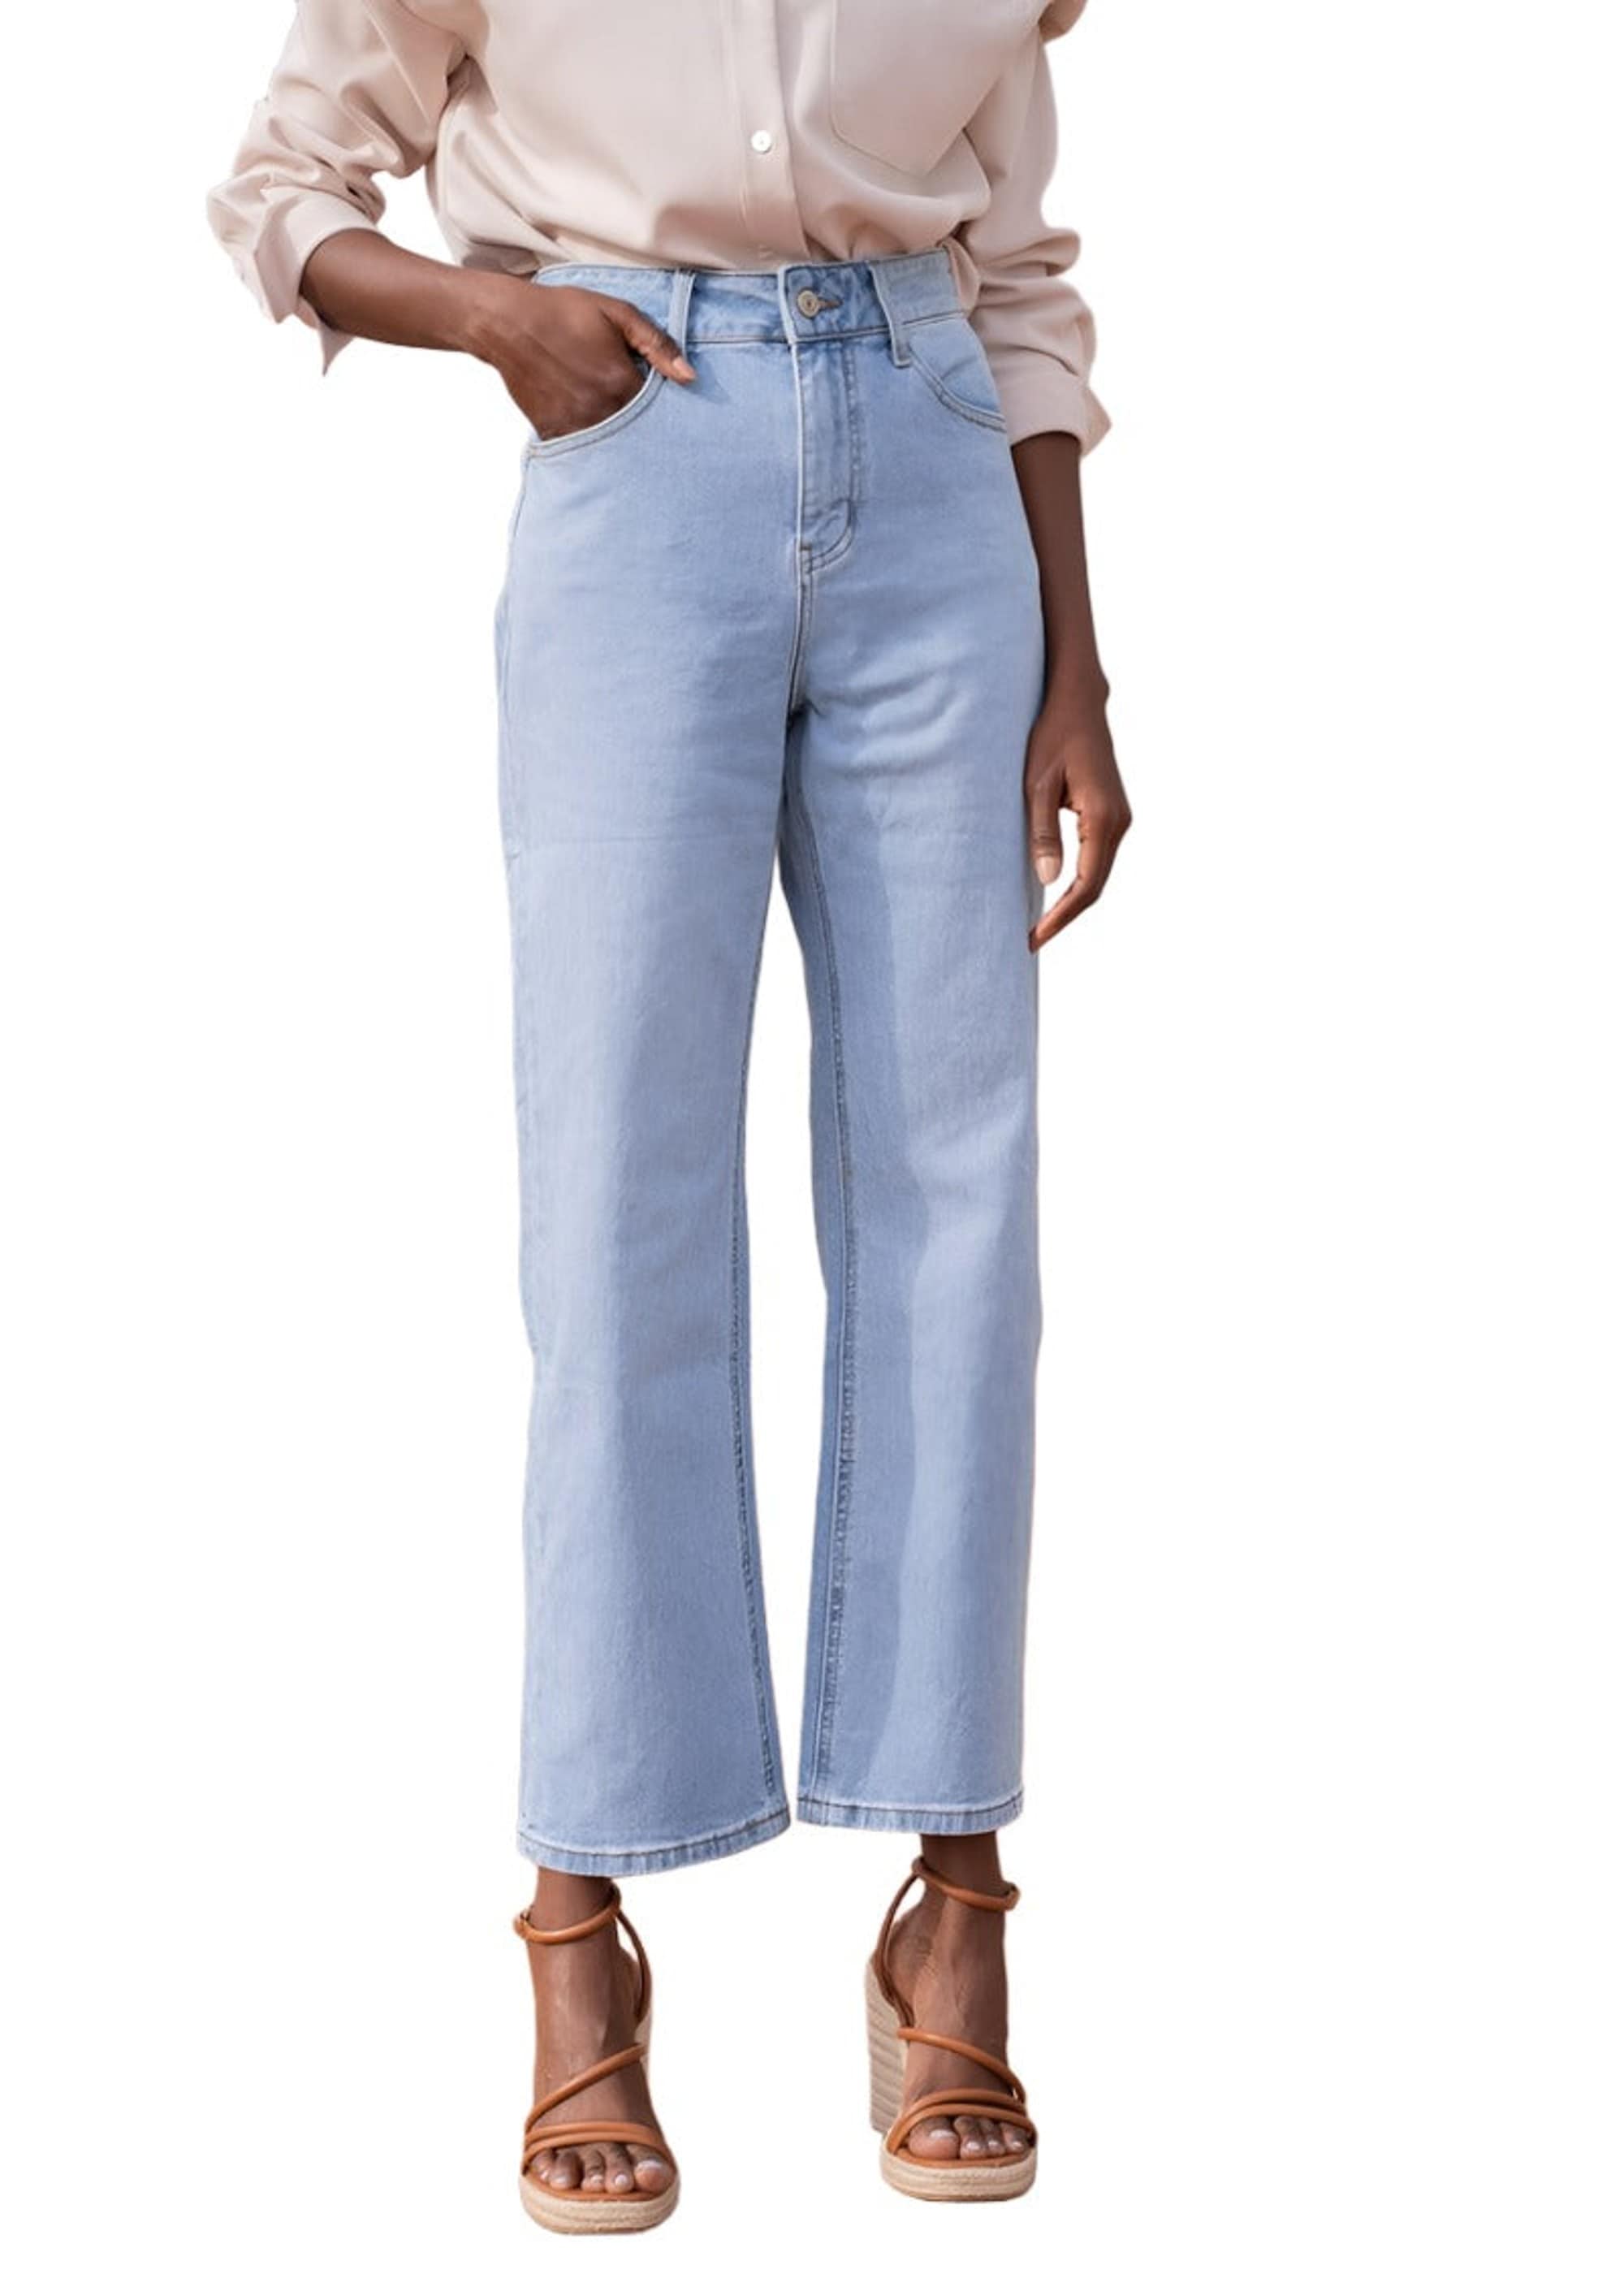 Oraije Paris Solange Straight Jeans - clever alice